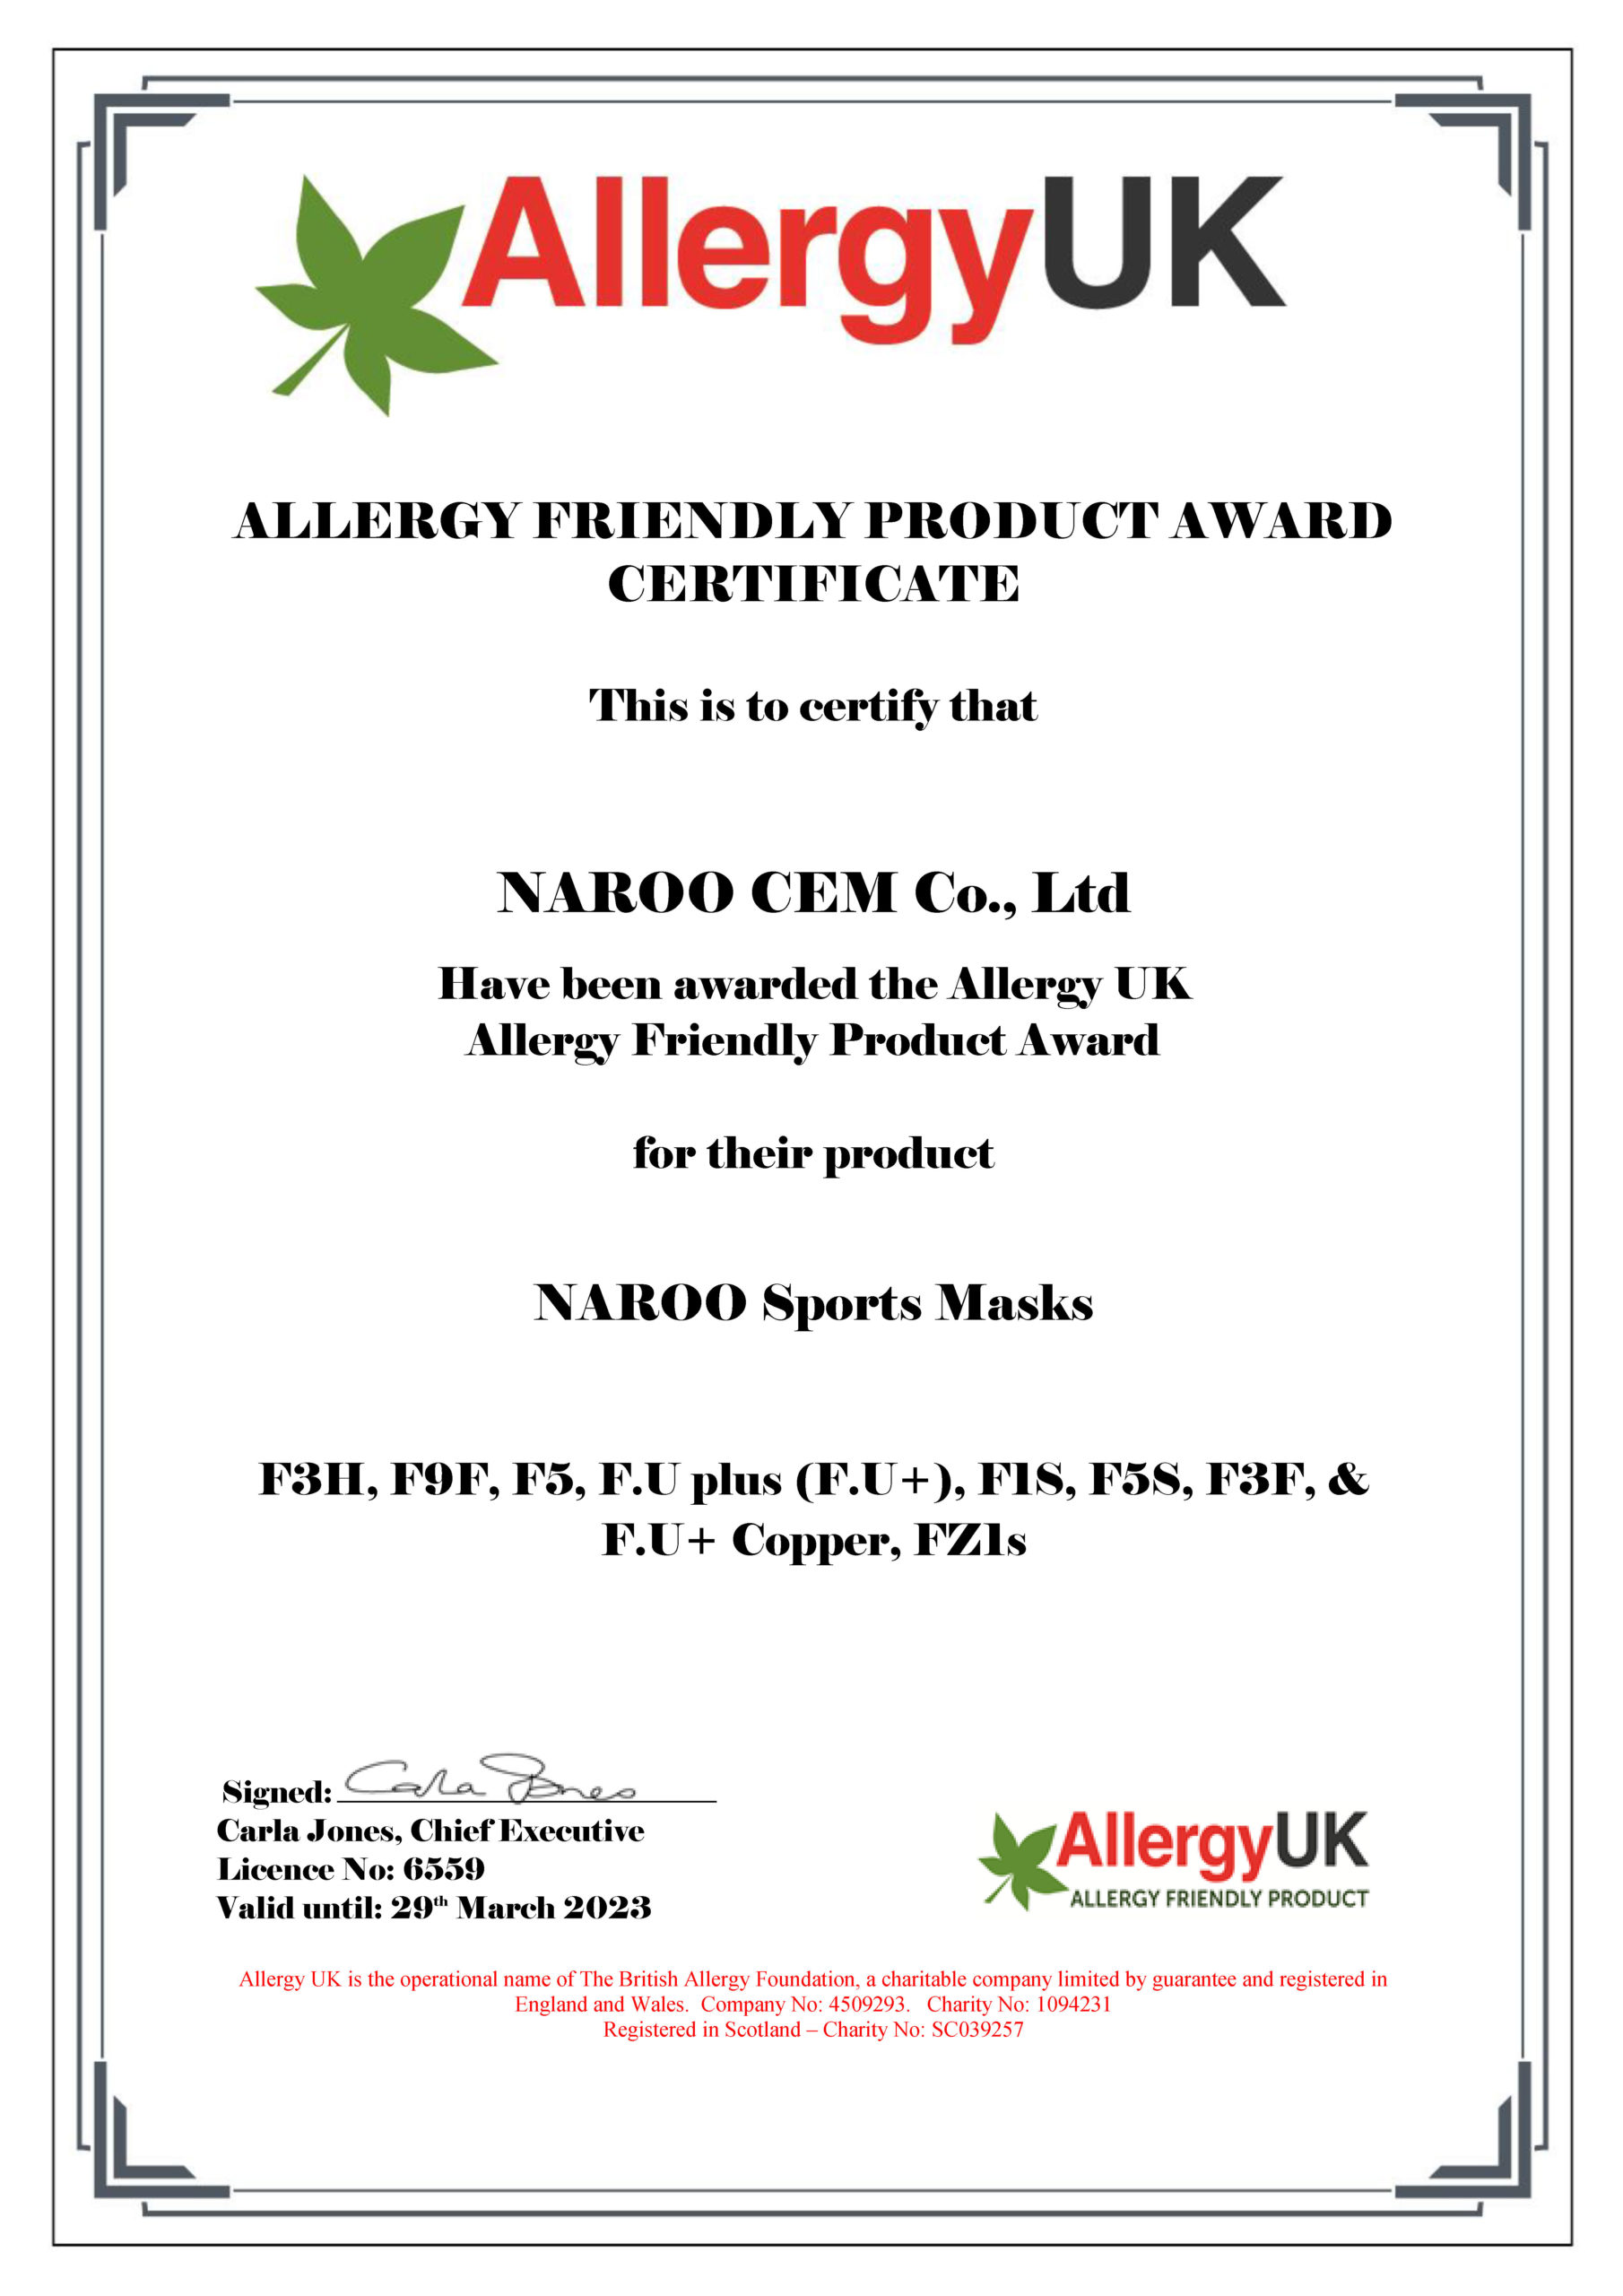 Allergy UK aprova NAROO Máscaras para Prêmio de Produto Amigável à Alergia - 4 pacotes de máscaras esportivas da série F NAROO linha